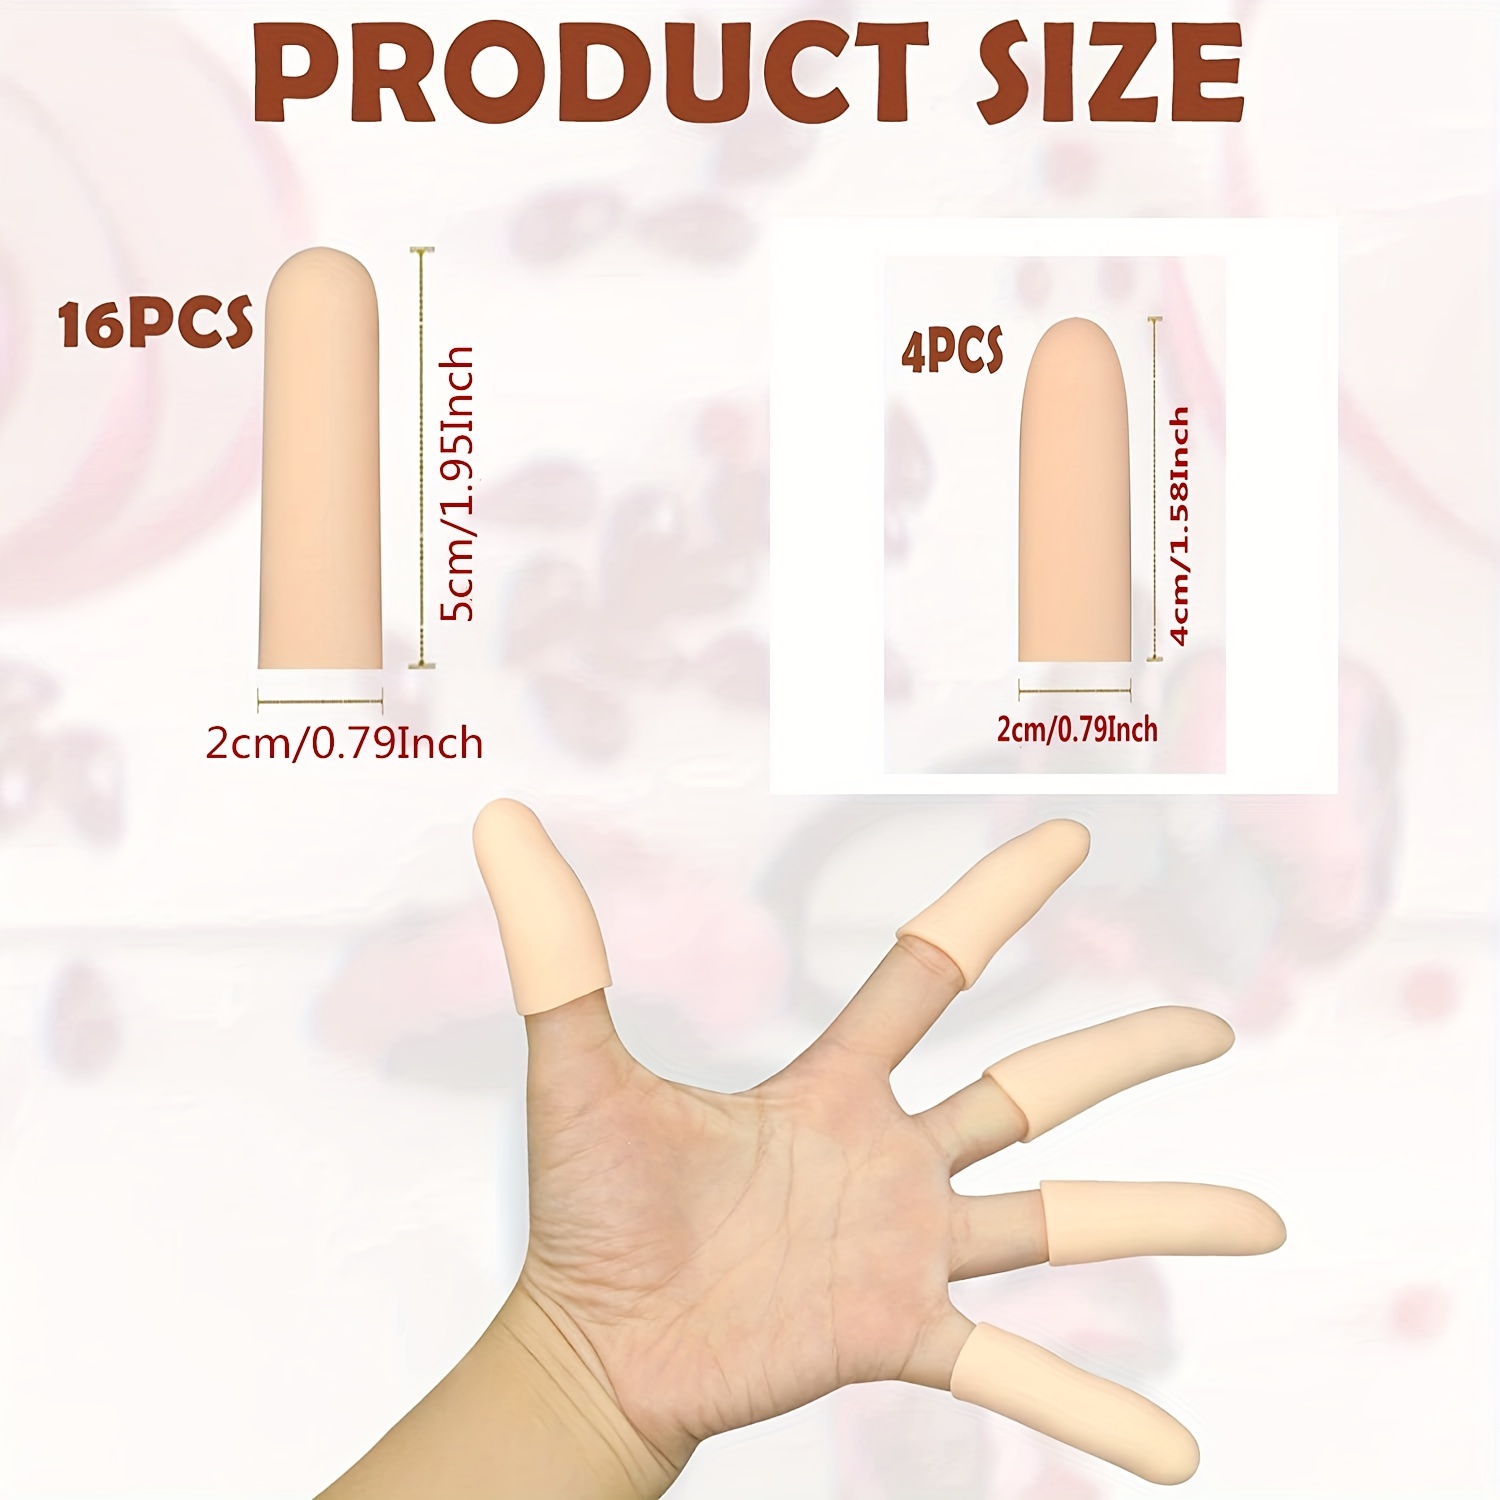 Cunas de gel para los dedos, soporte protector de dedos (14 piezas) nuevo  material de fundas para dedos ideales para dedos gatillo, eccema de manos